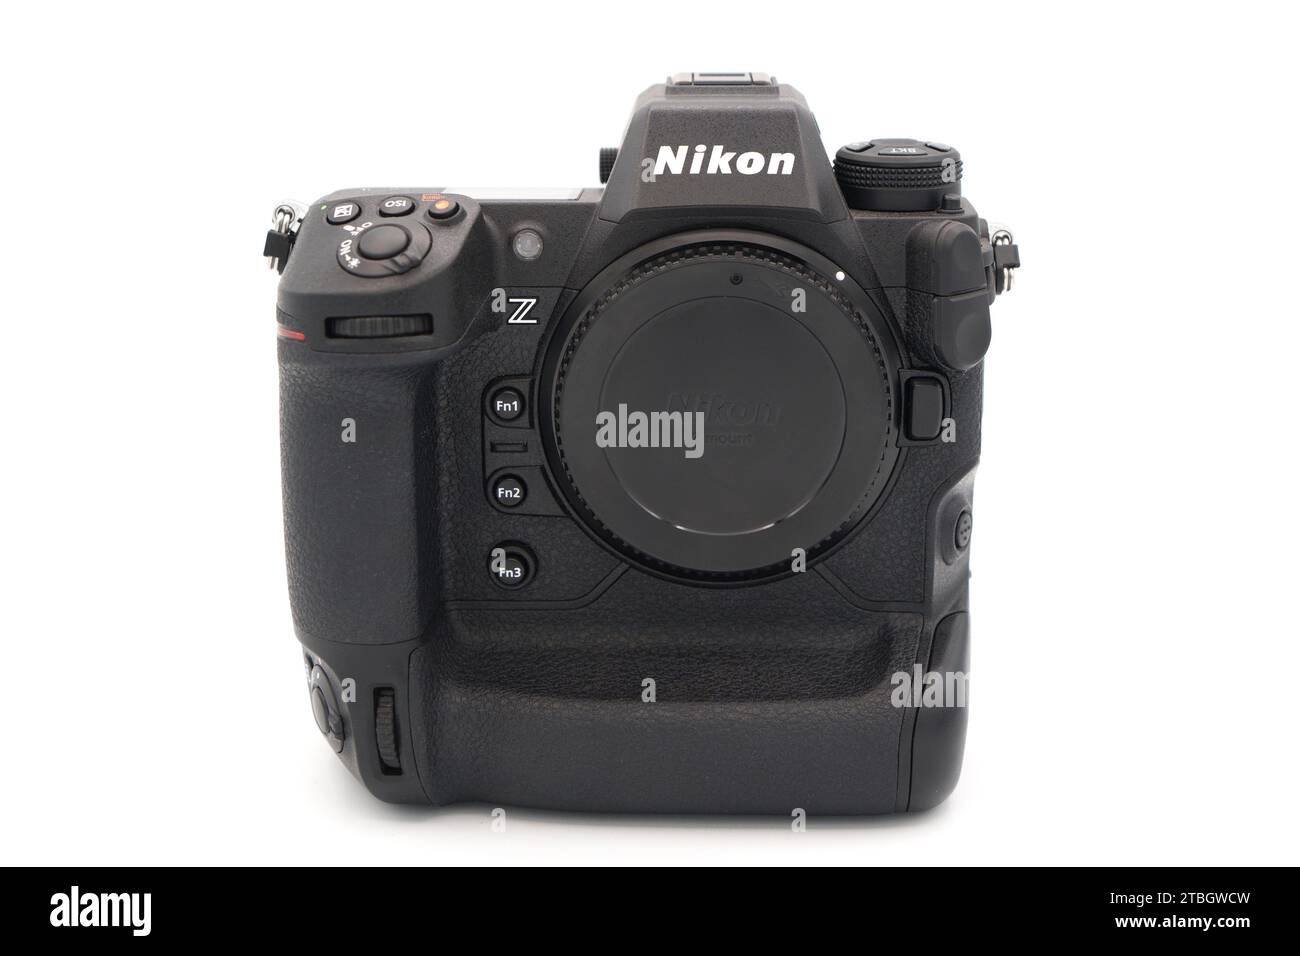 Nikon profesional fotografías e imágenes de alta resolución - Alamy